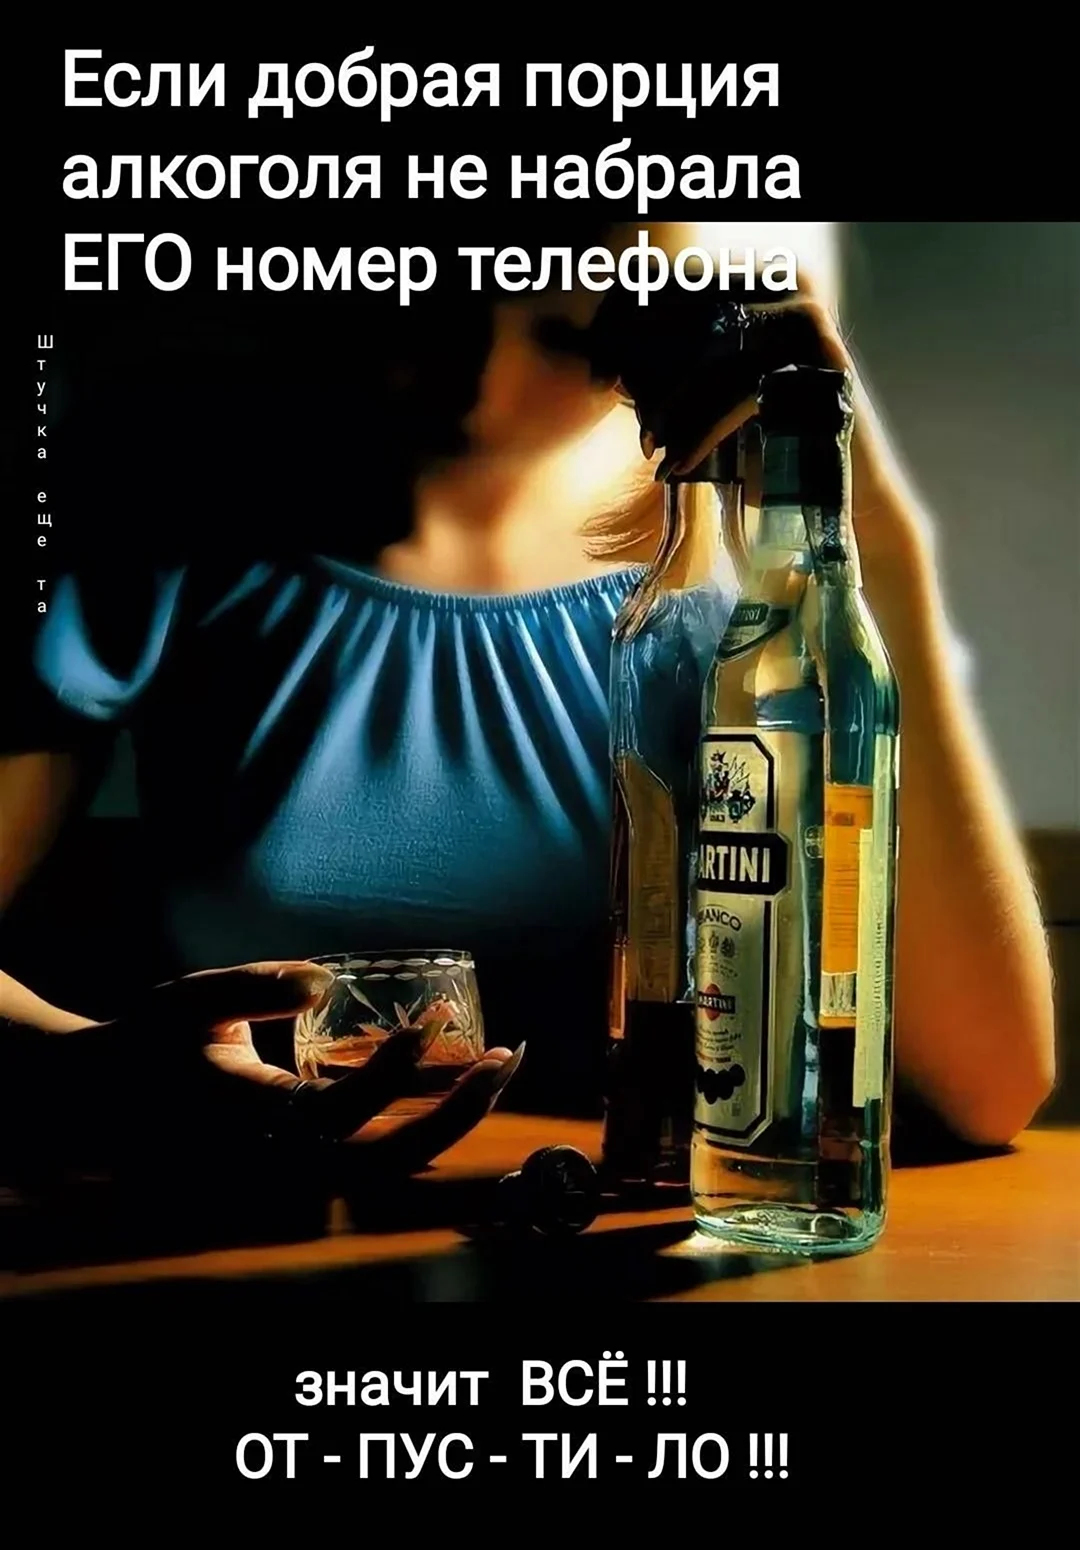 Демотиваторы про алкоголь. Картинка